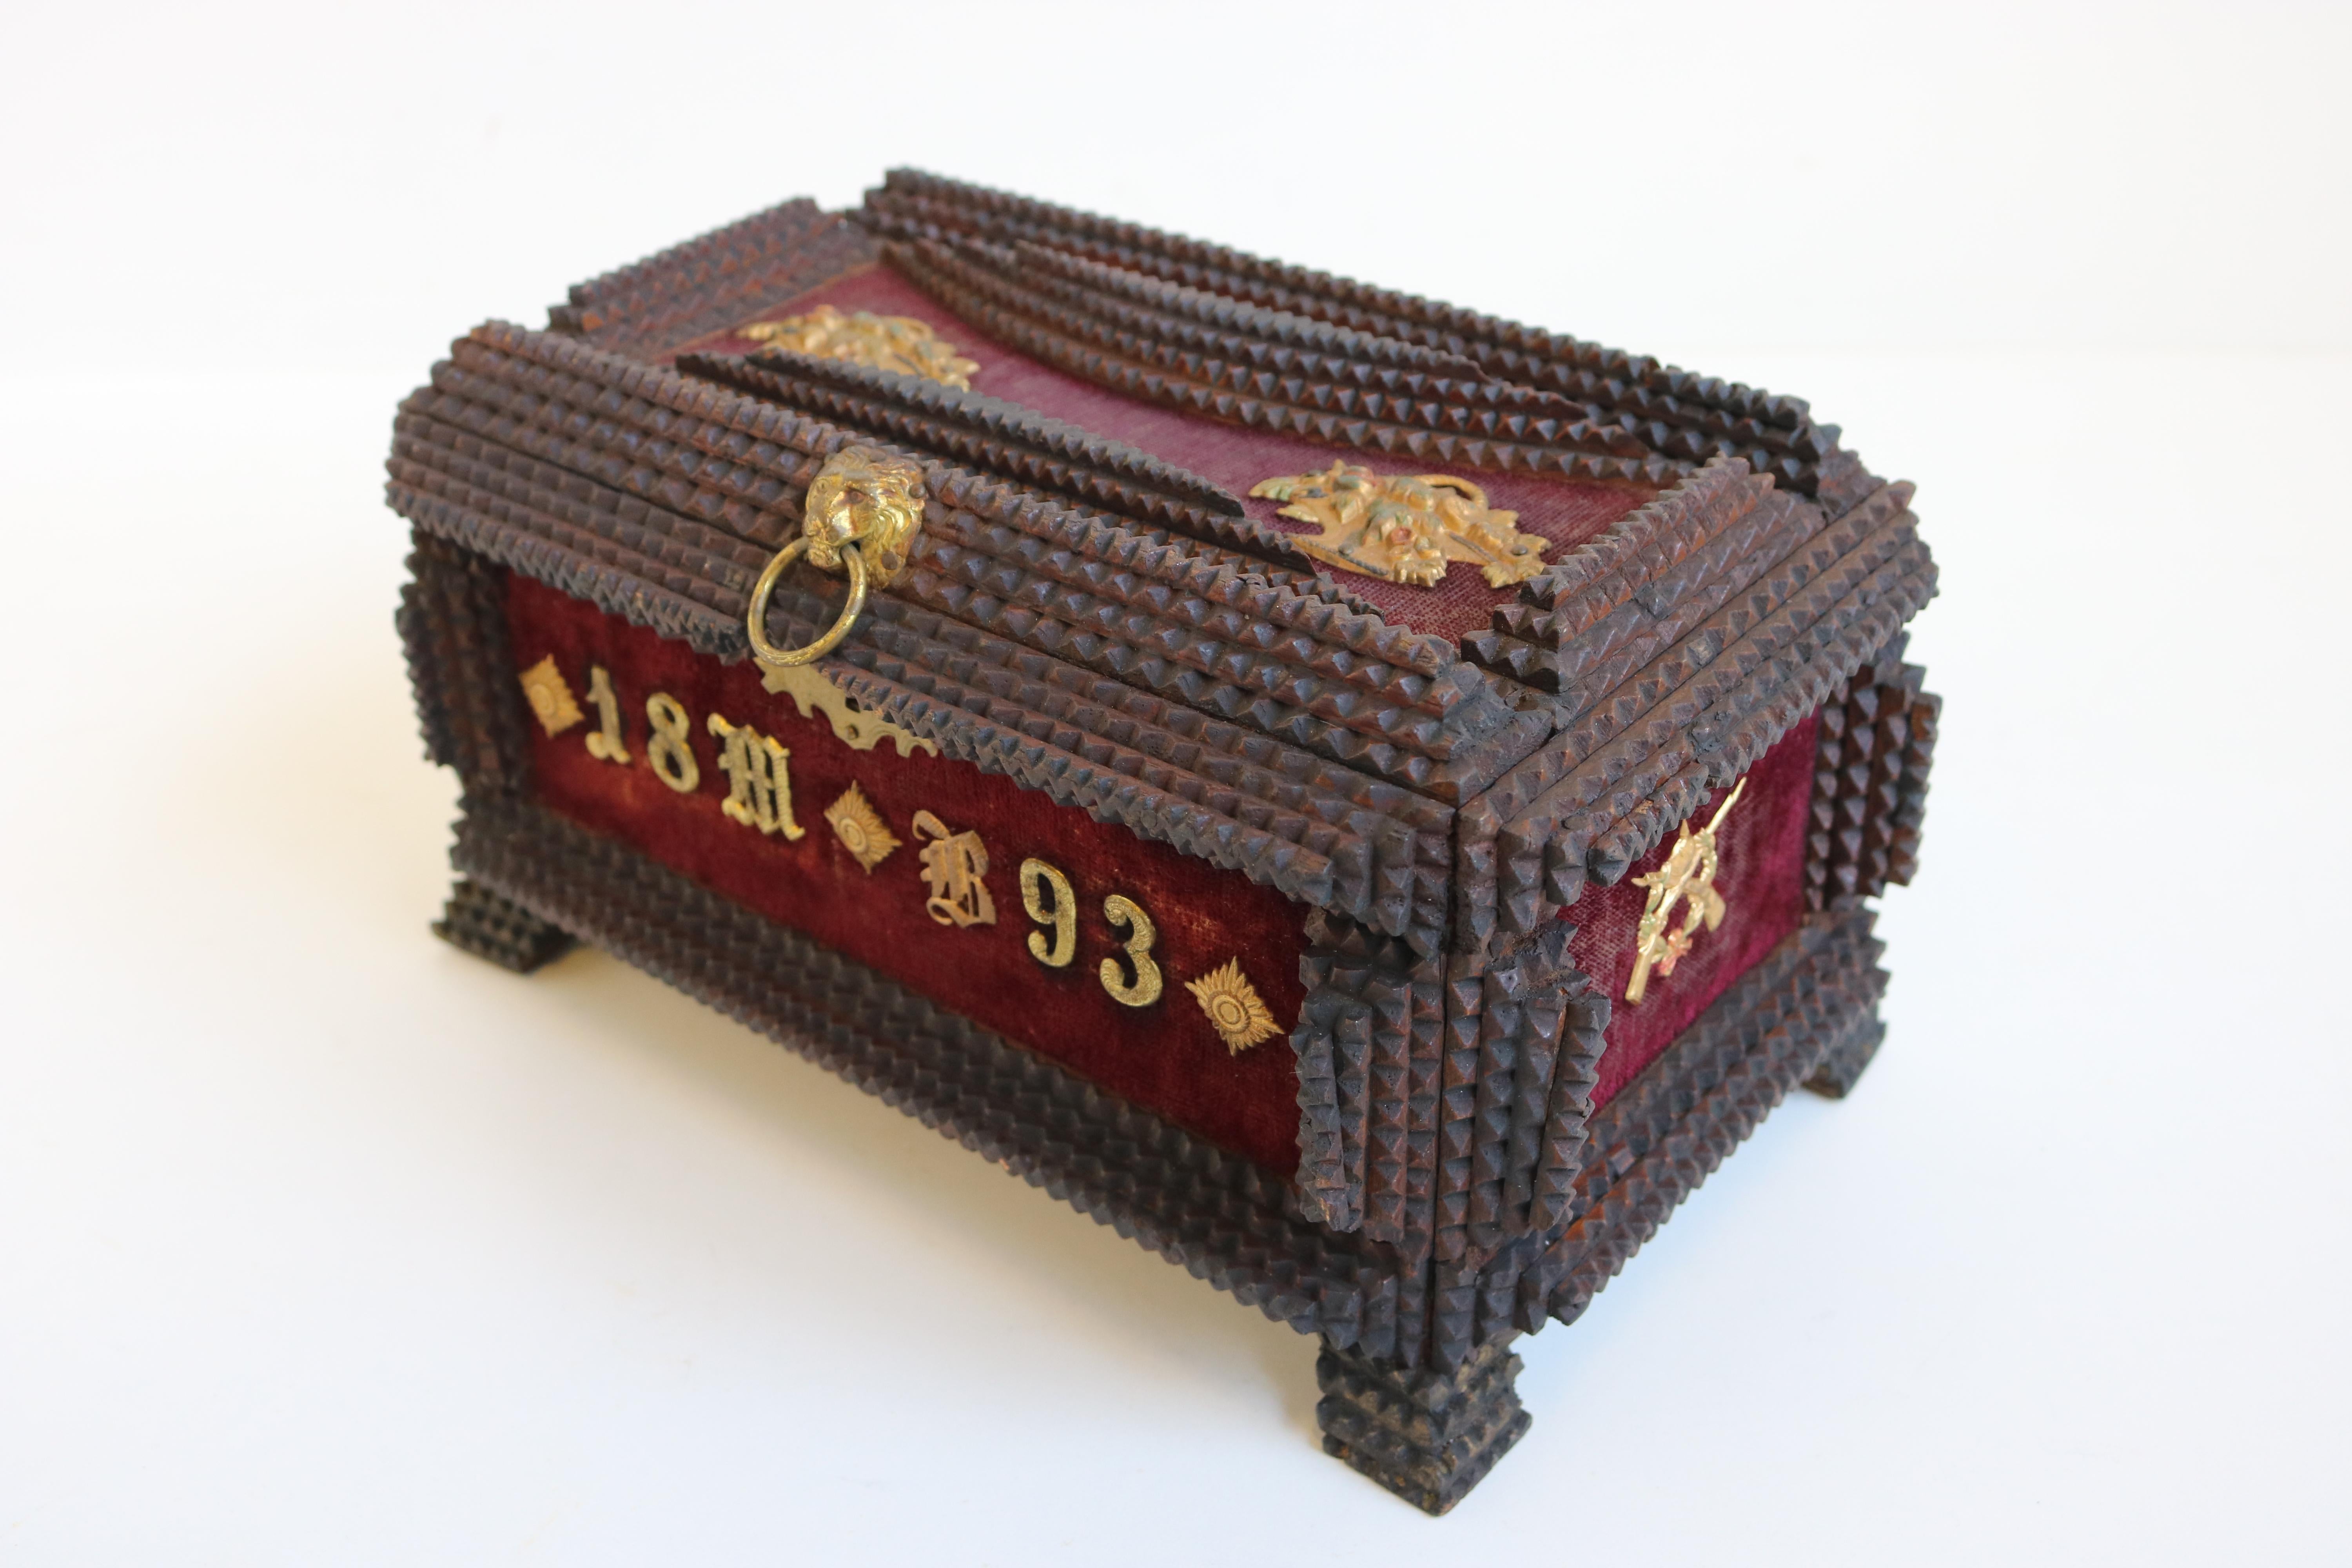 Magnifique boîte Tramp Art / Boîte à bijoux marquée 1893 et décorée de laiton. 
La boîte contient plusieurs fusils et casques de brochet et une tête de lion tenant un anneau en laiton pour ouvrir le coffre. 
Ce coffre a probablement été fabriqué